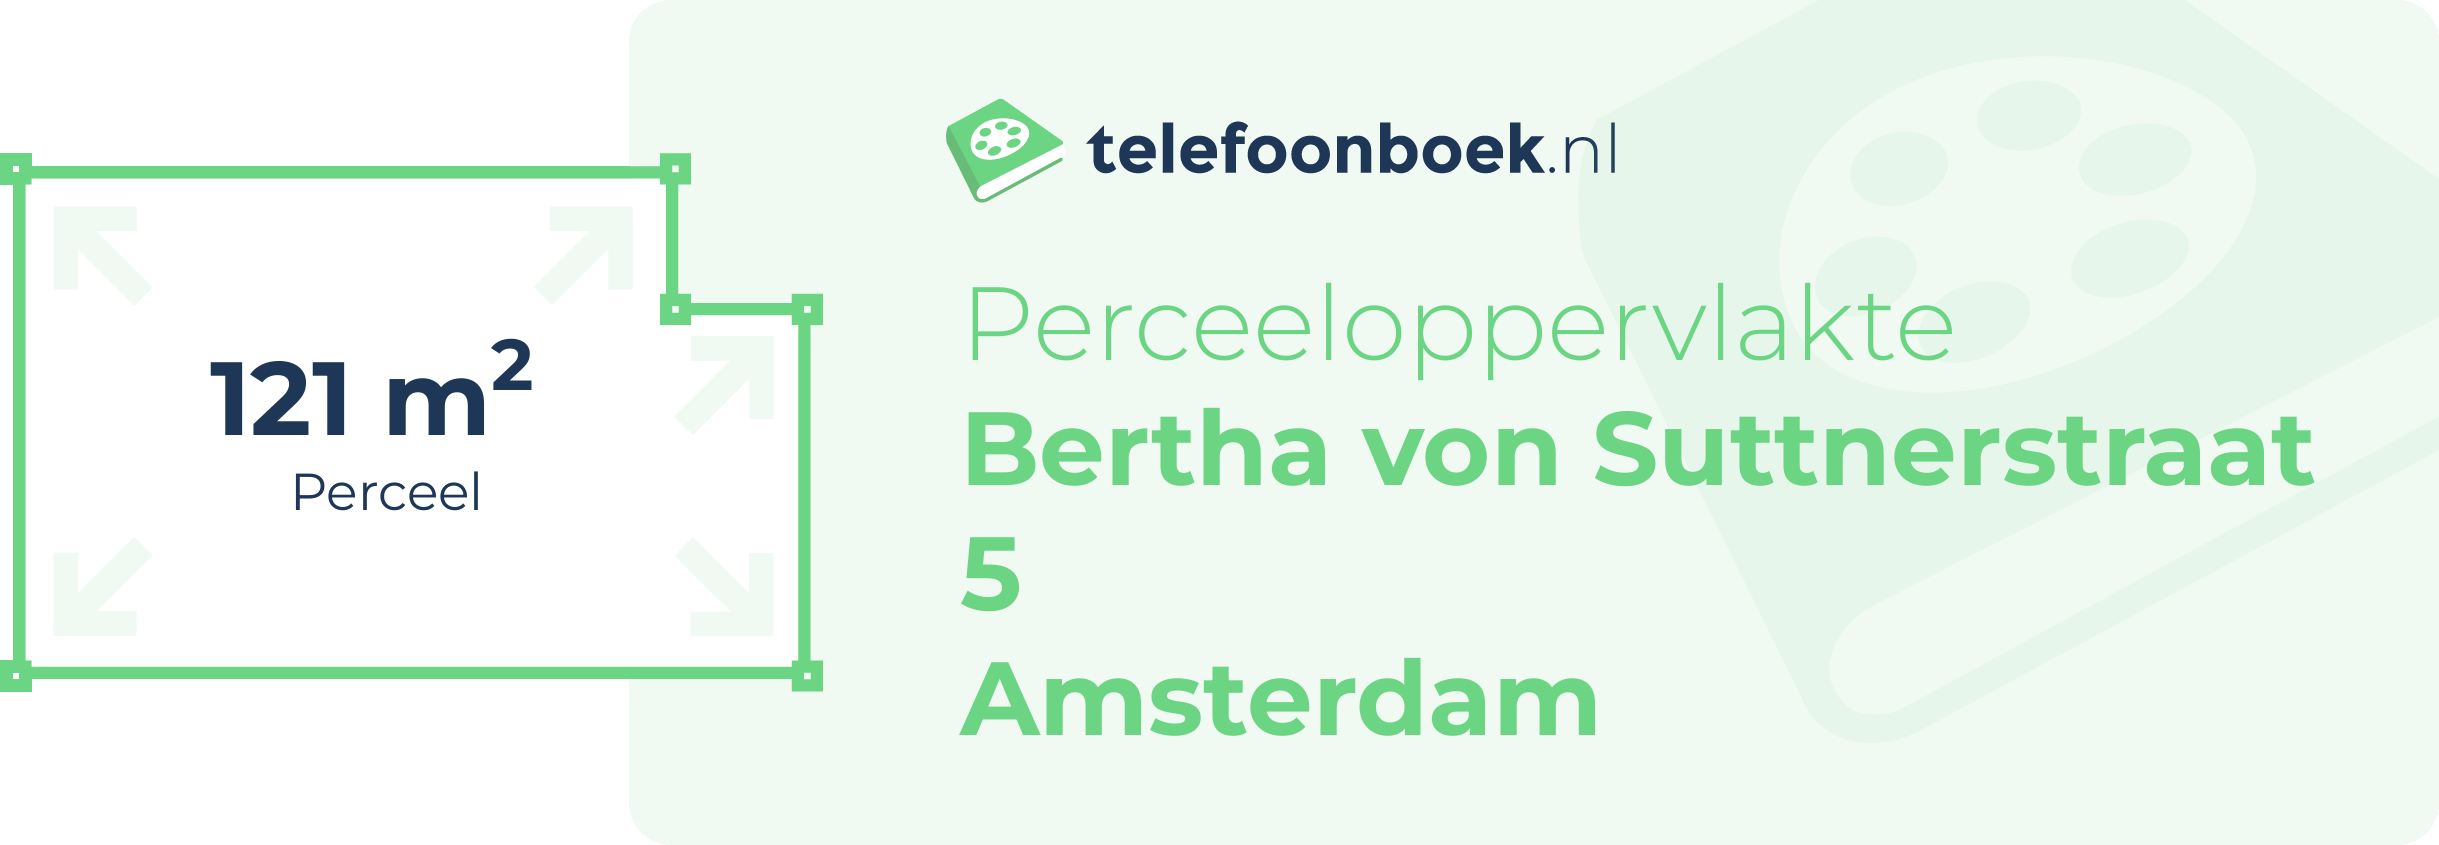 Perceeloppervlakte Bertha Von Suttnerstraat 5 Amsterdam